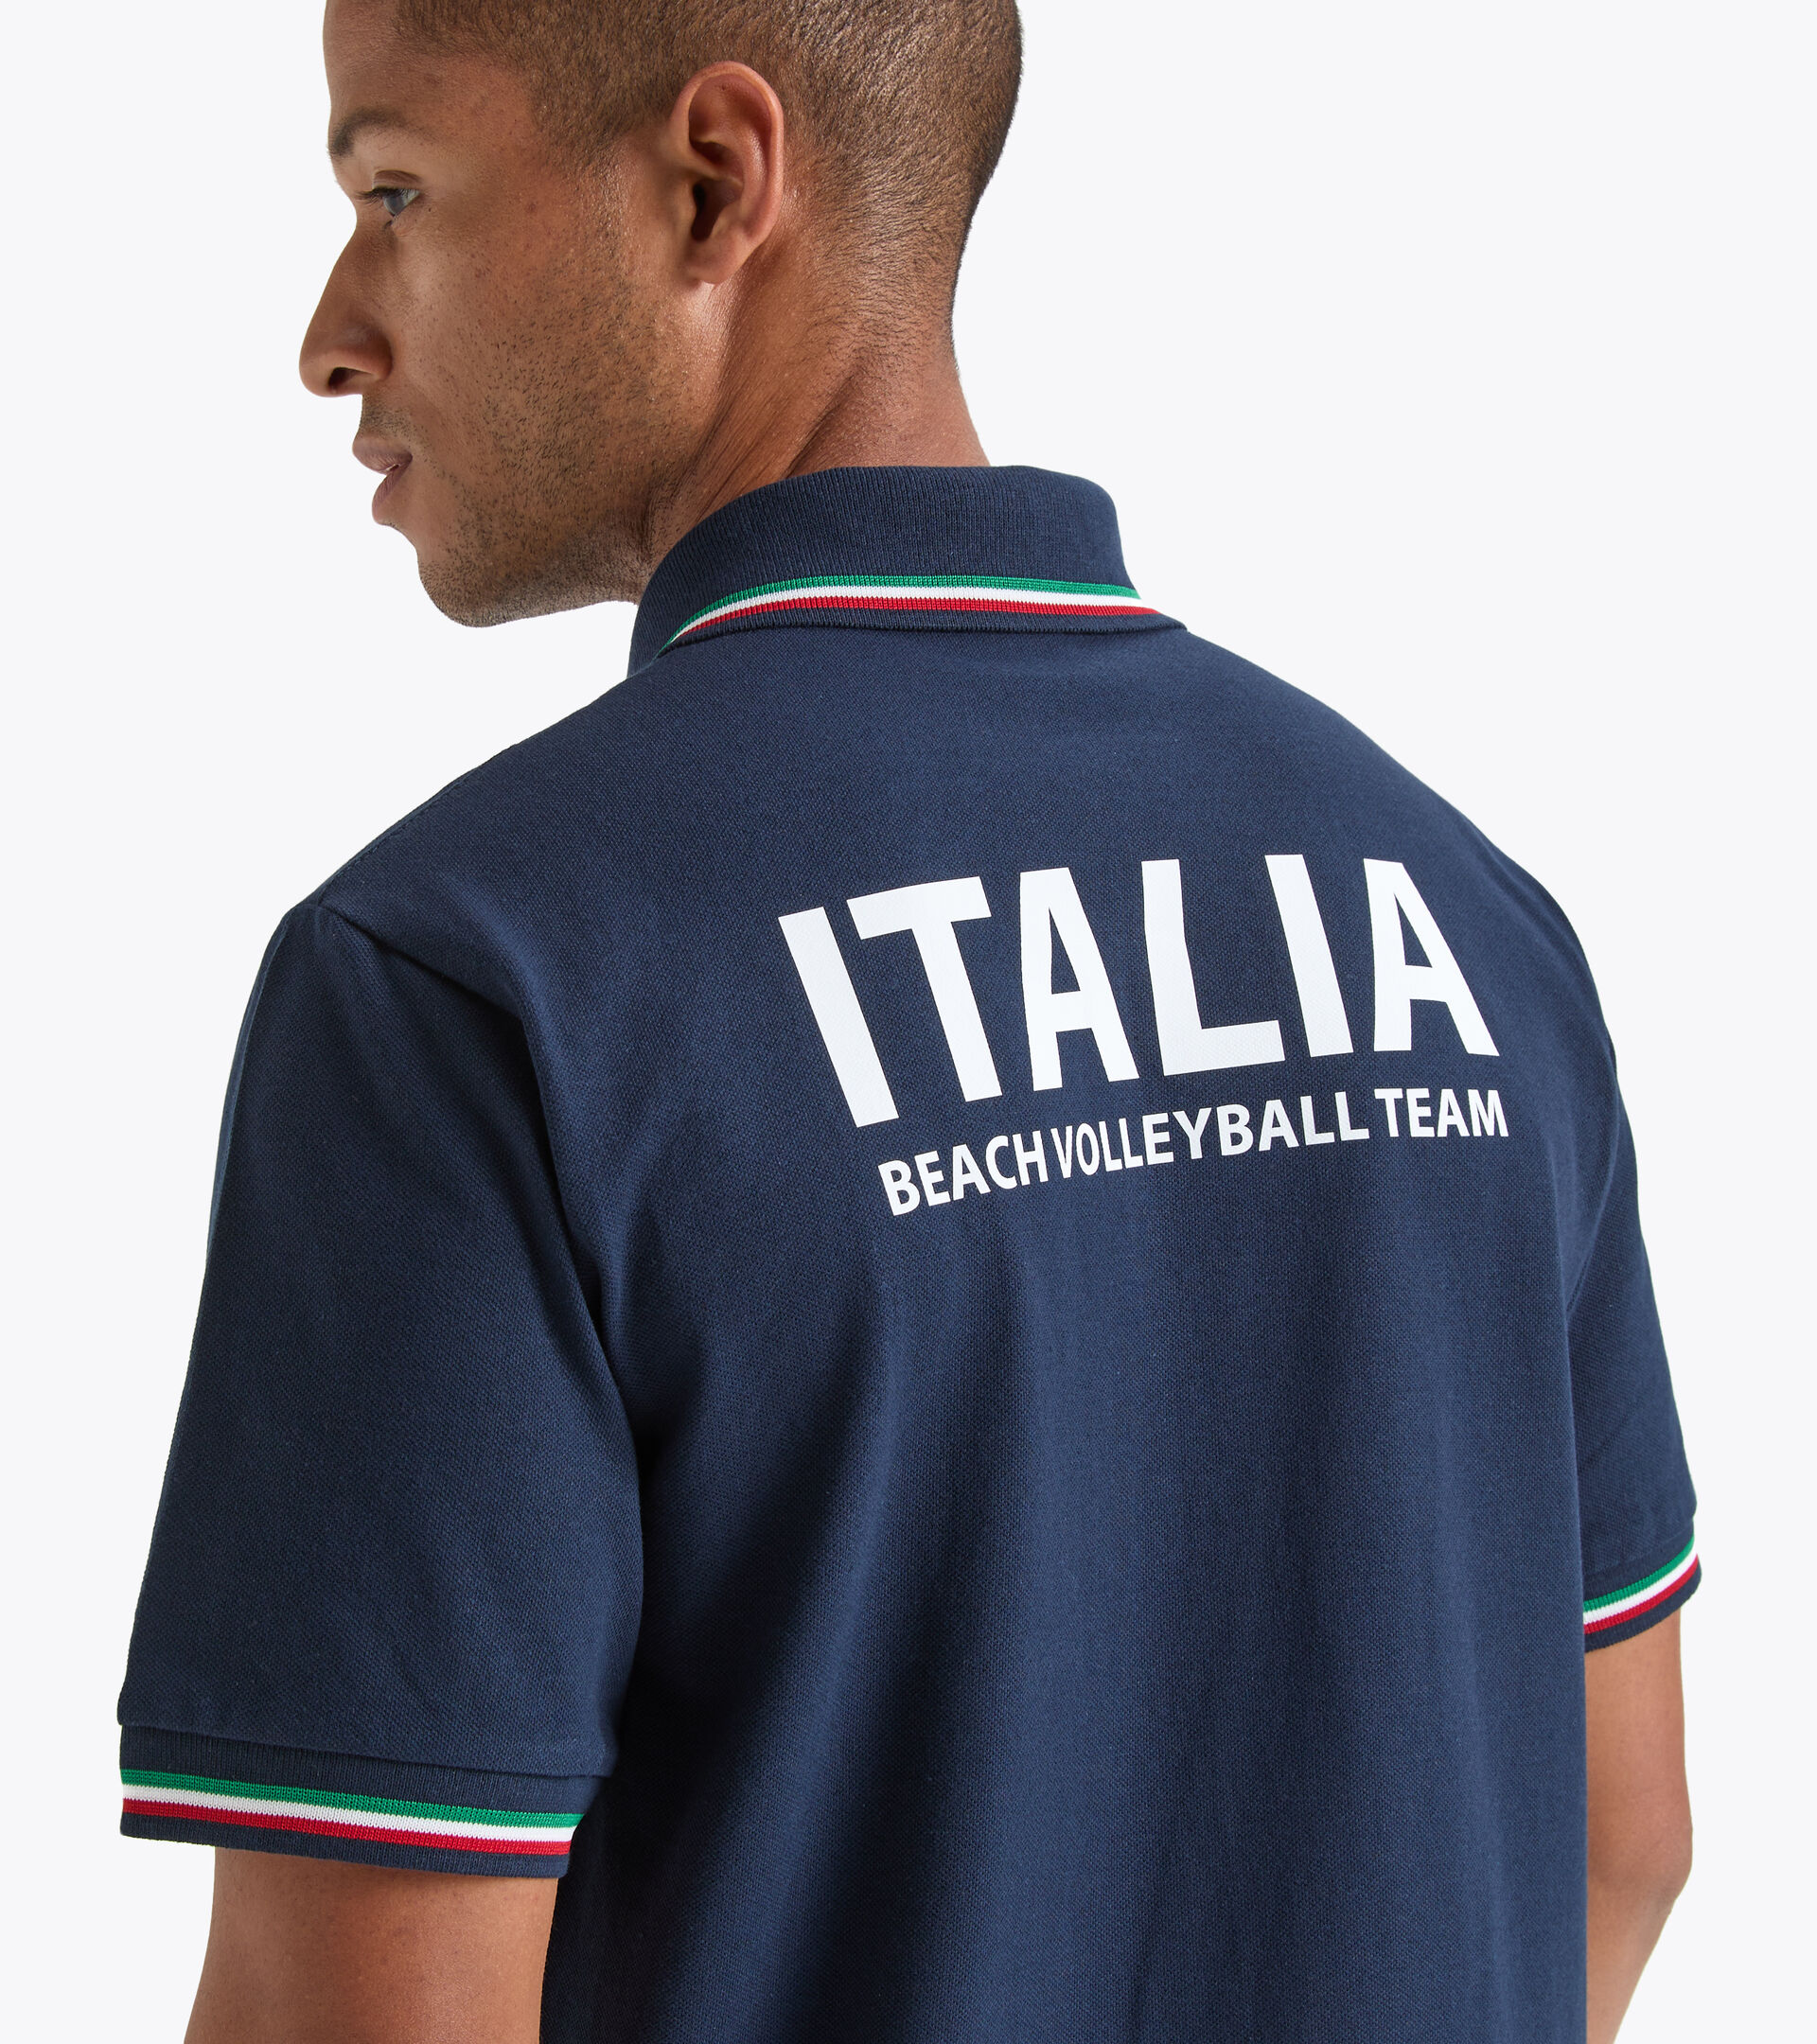 Polo shirt - Italy National Volleyball Team  POLO RAPPRESENTANZA BV ITALIA NAVY BLAZER - Diadora